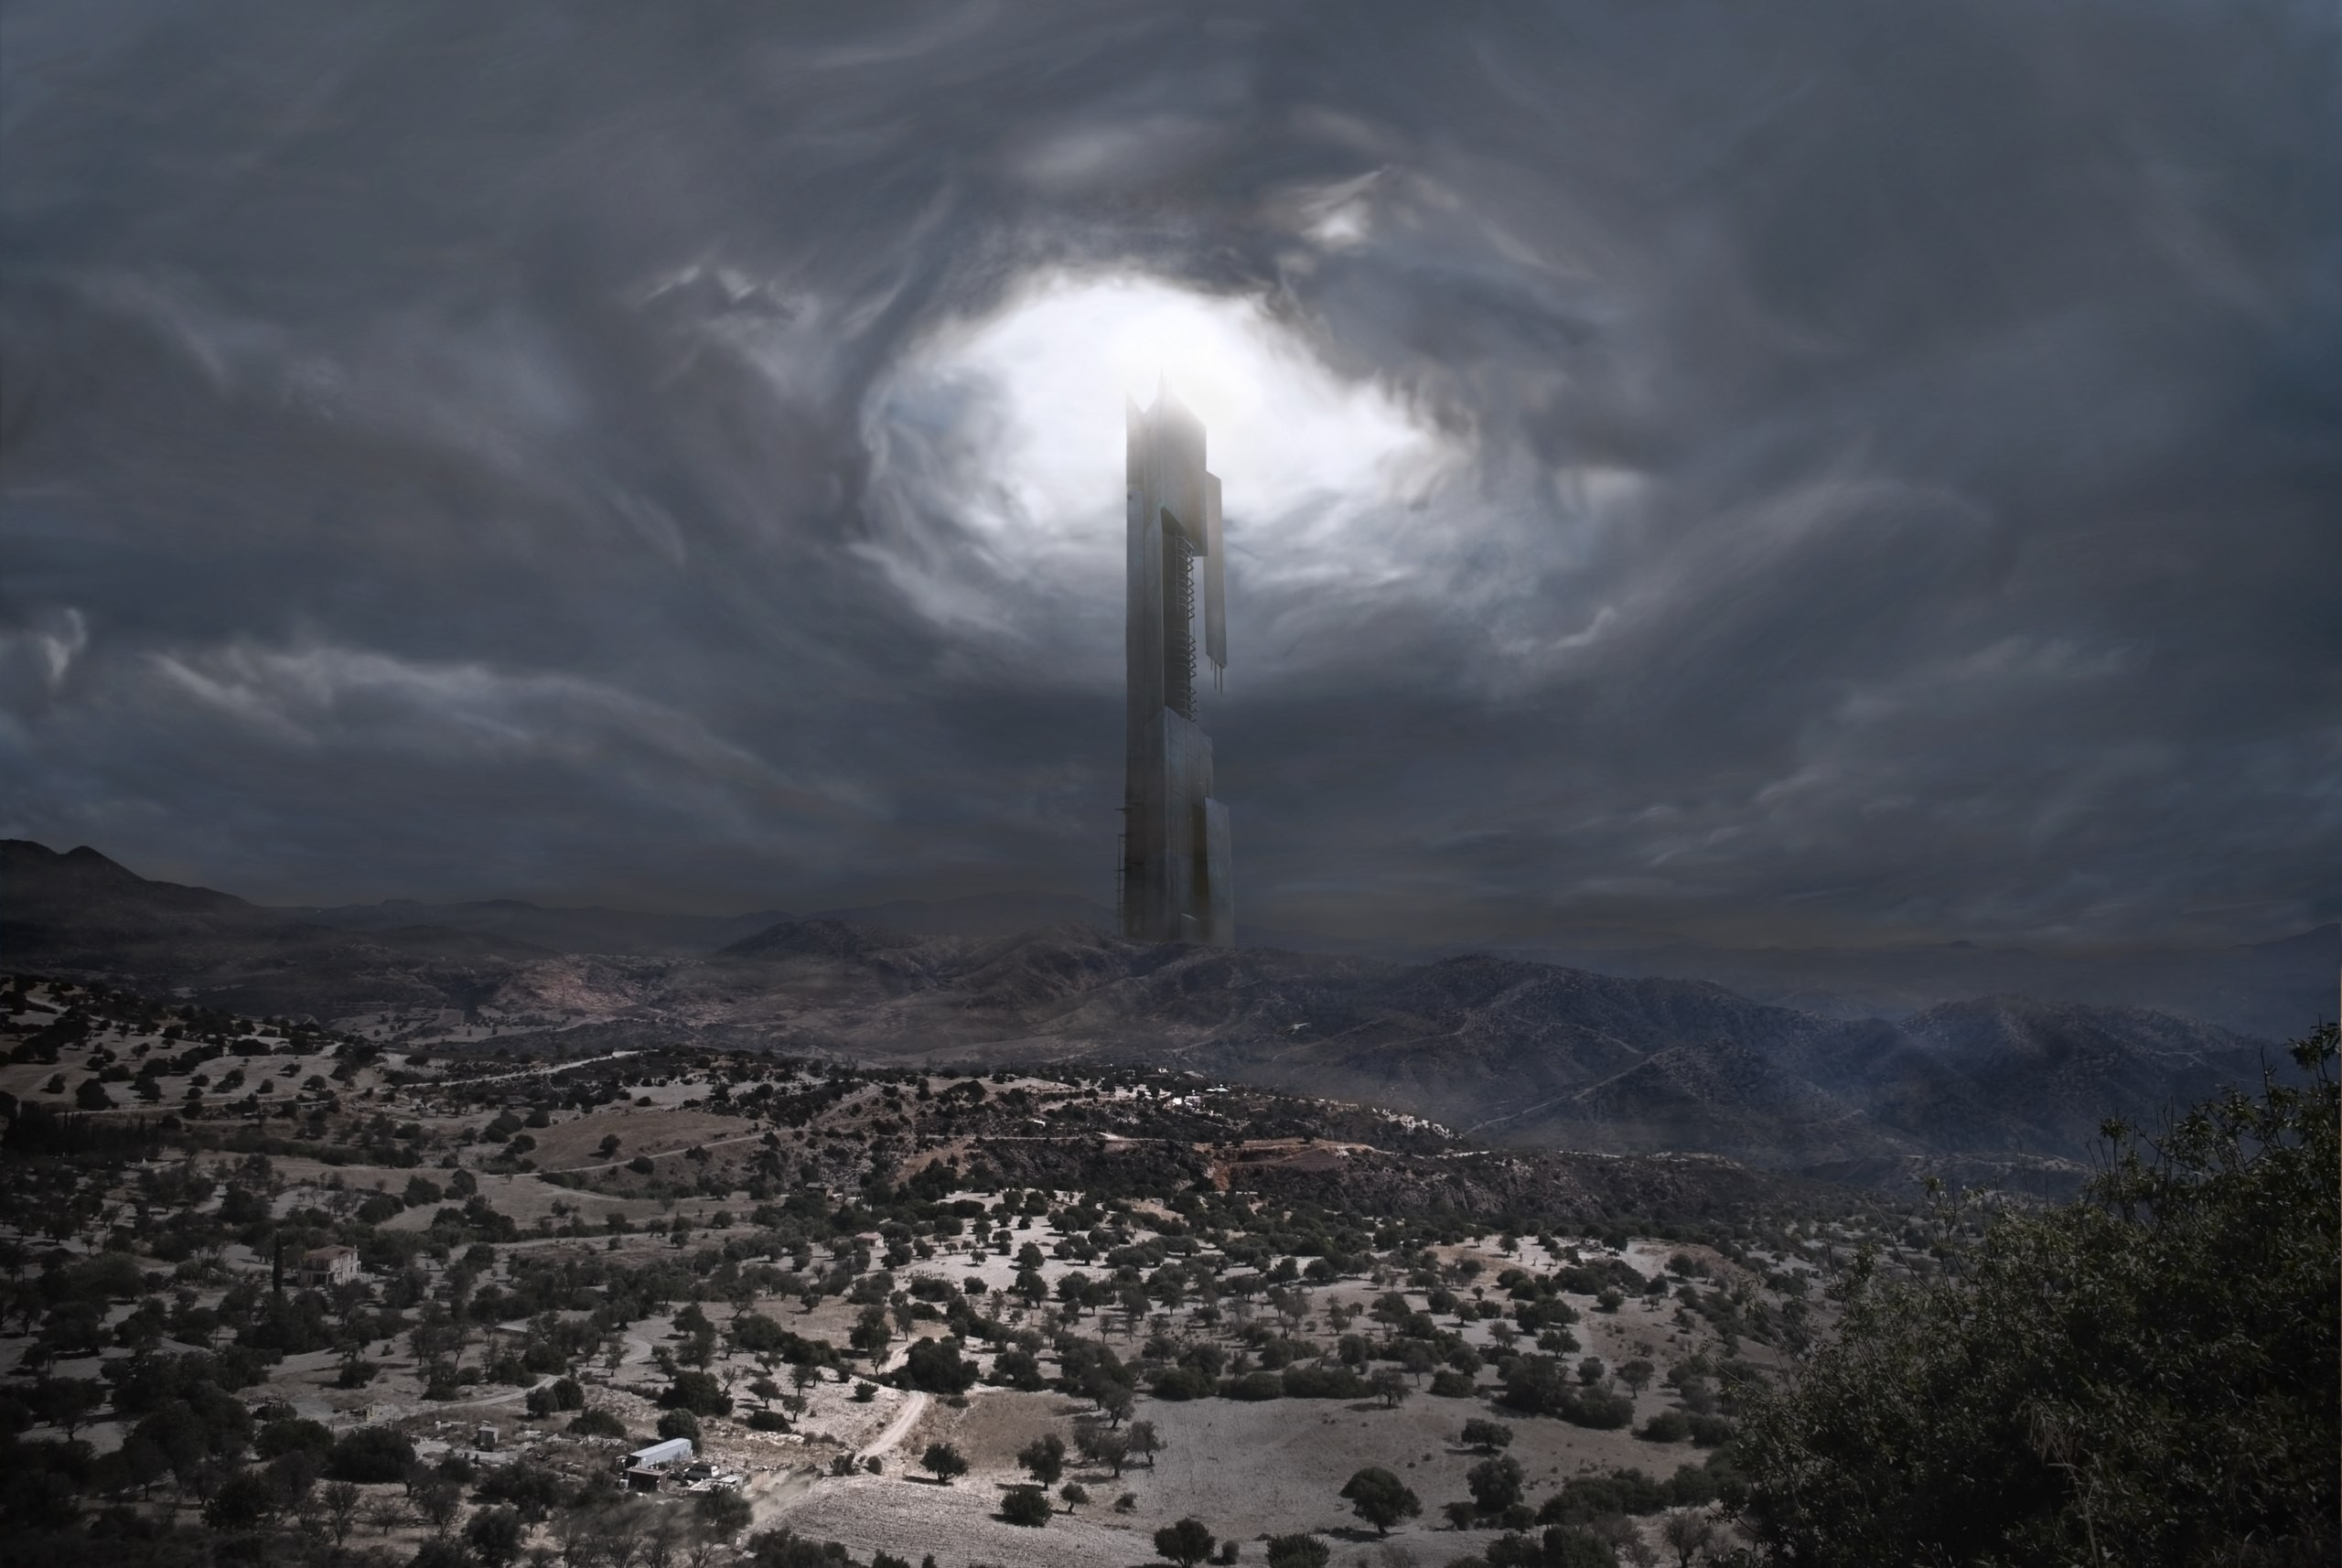 General 2560x1714 tower Half-Life 2 Citadel video games sky